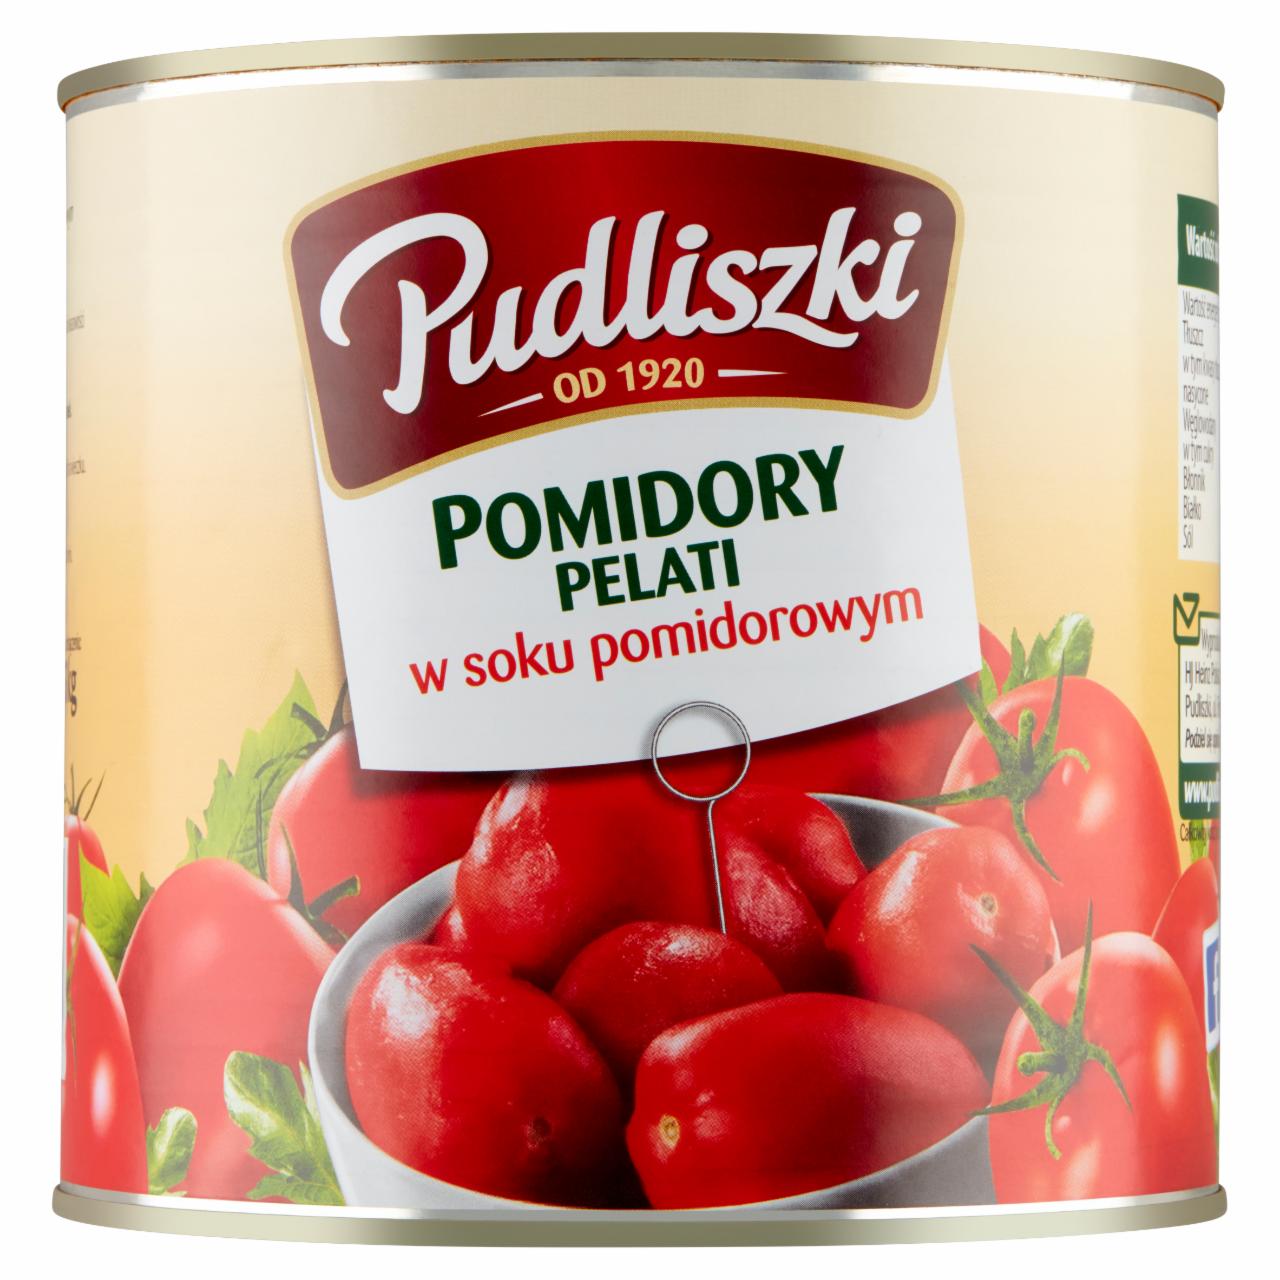 Photo - Pudliszki Pelati Tomatoes in Tomato Juice 2.55 kg